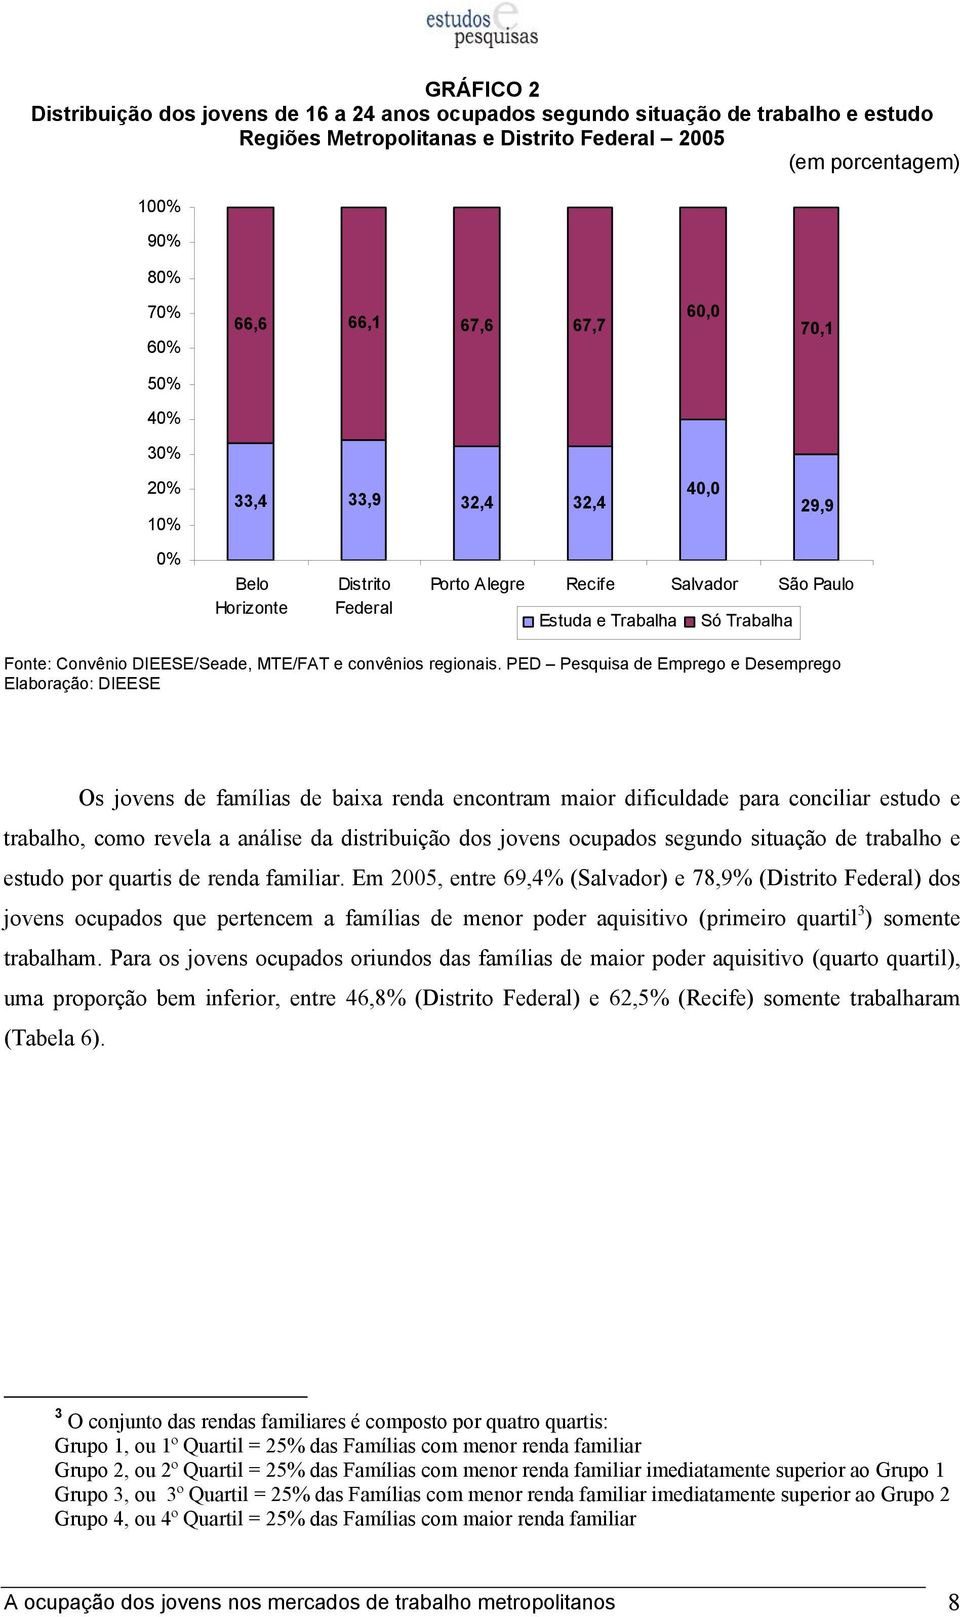 maior dificuldade para conciliar estudo e trabalho, como revela a análise da distribuição dos jovens ocupados segundo situação de trabalho e estudo por quartis de renda familiar.